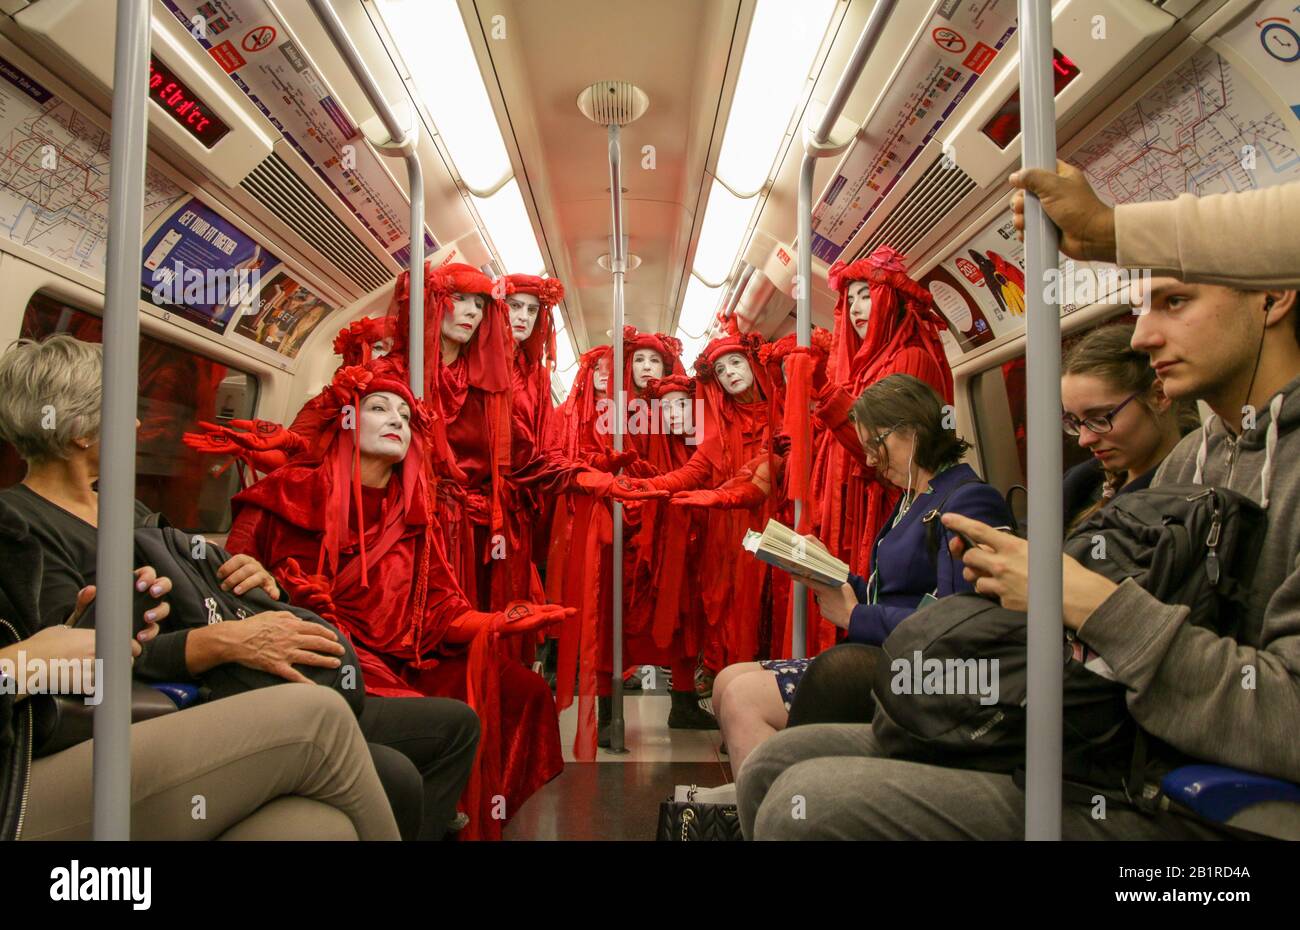 @ptrbrks 'Etiquette'. La Brigata Red Rebel è una protesta di performance, che proietta emozioni per interrompere la vita quotidiana e chiedere un’azione climatica. Foto Stock